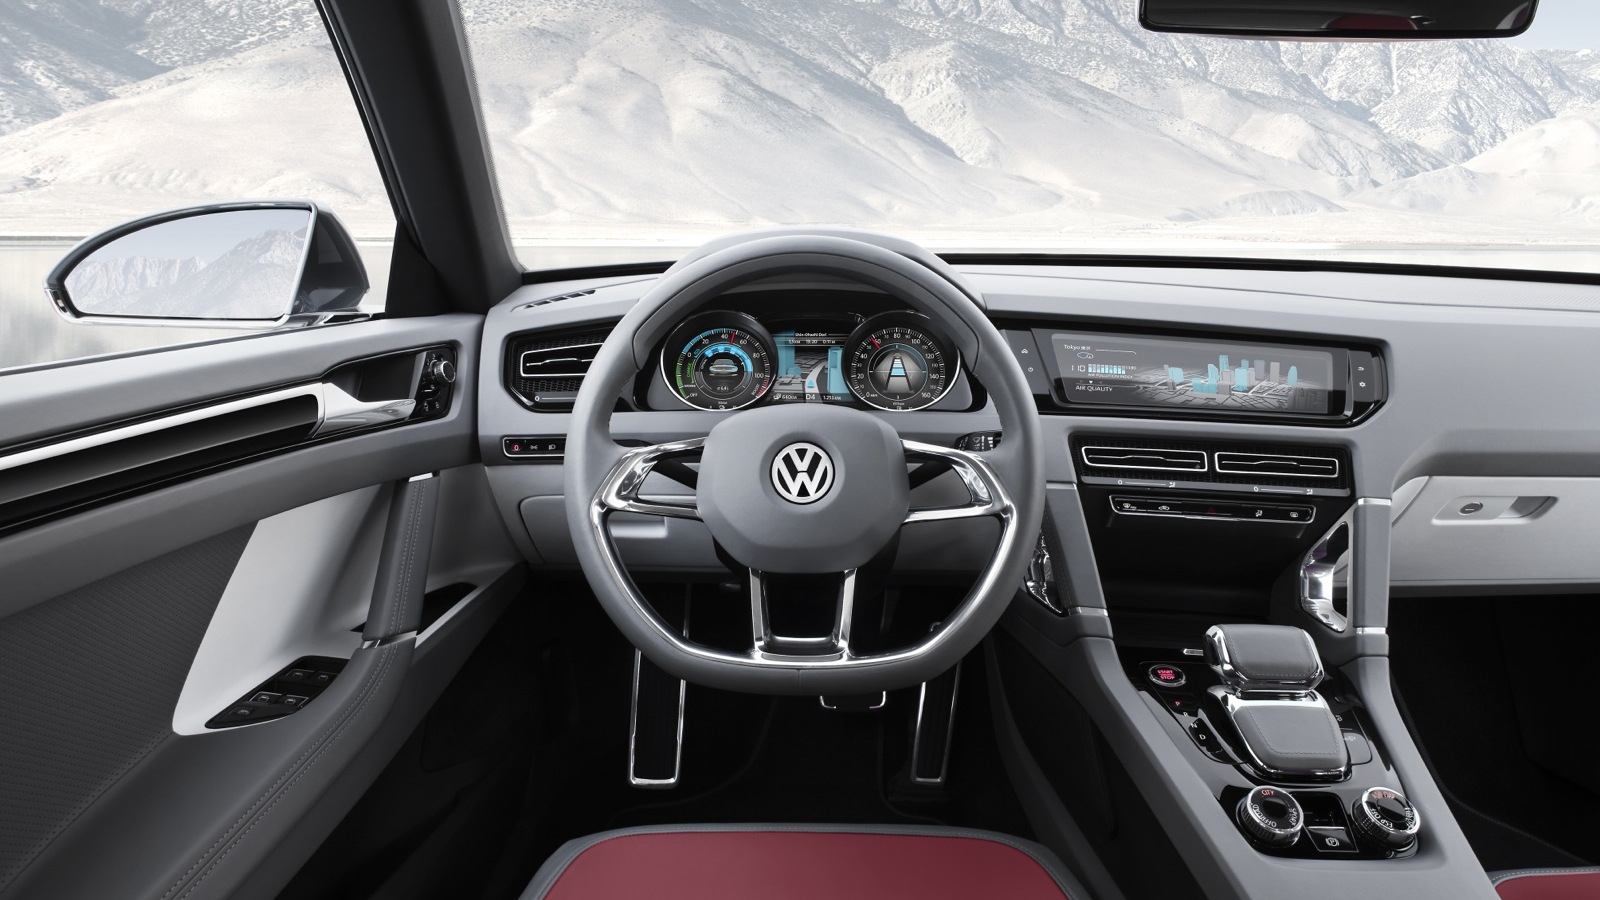 Volkswagen Cross Coupe Concept